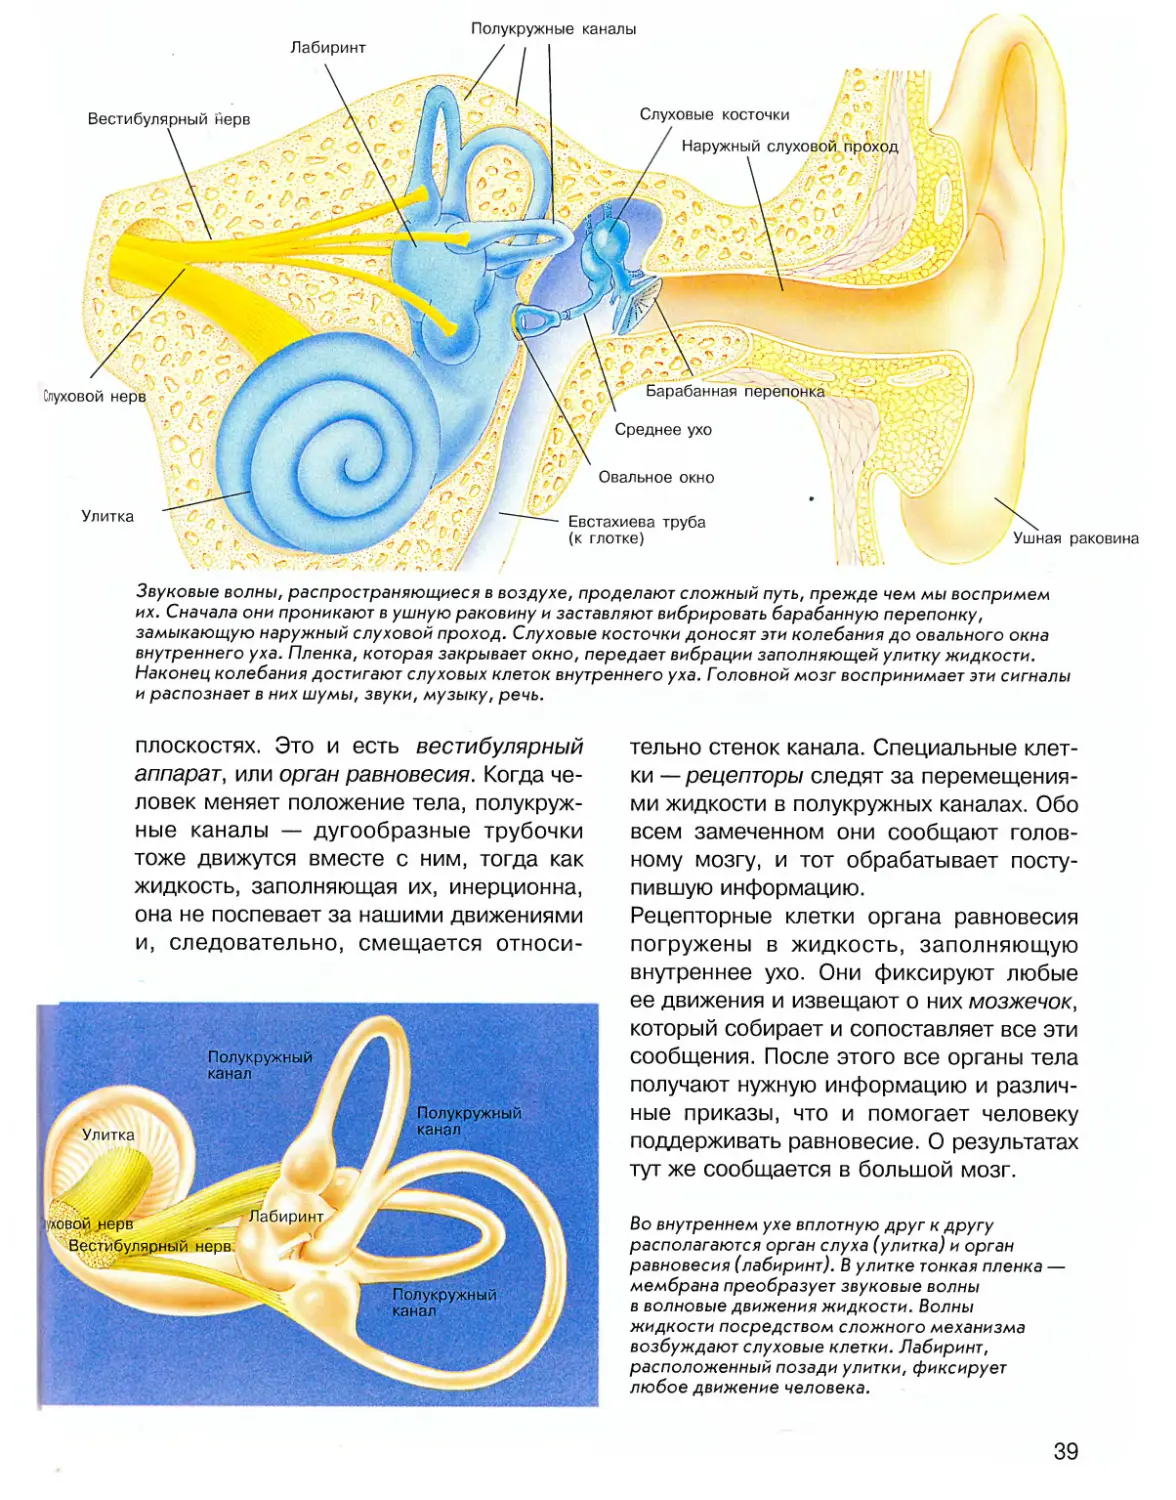 Полукружные каналы внутреннего уха расположены. Вестибулярный аппарат внутреннего уха. Полукружные каналы внутреннего уха. Внутреннее ухо вестибулярный аппарат. Строение полукружных каналов внутреннего уха.